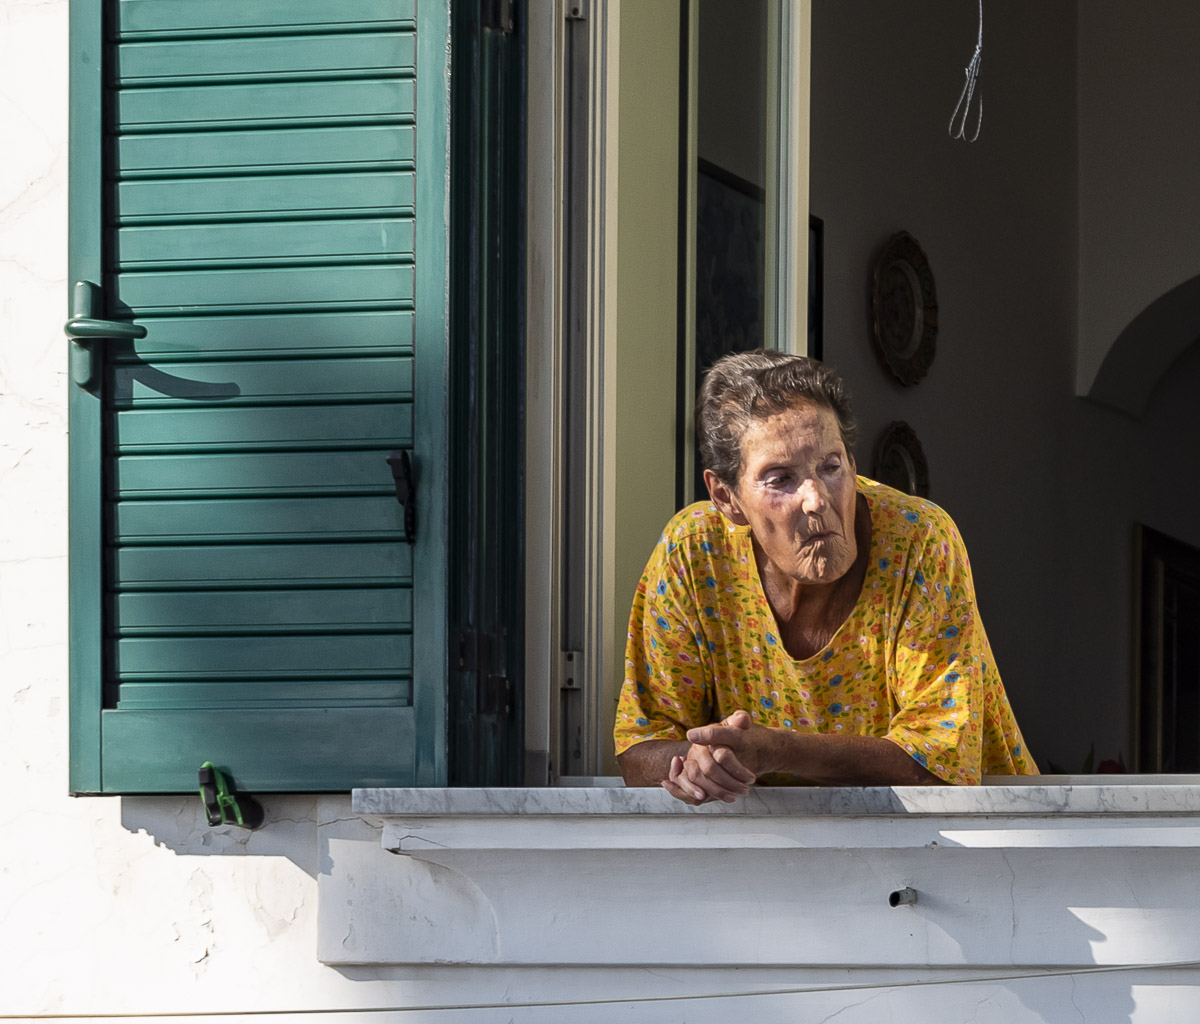 Woman in window, Amalfi, Italy